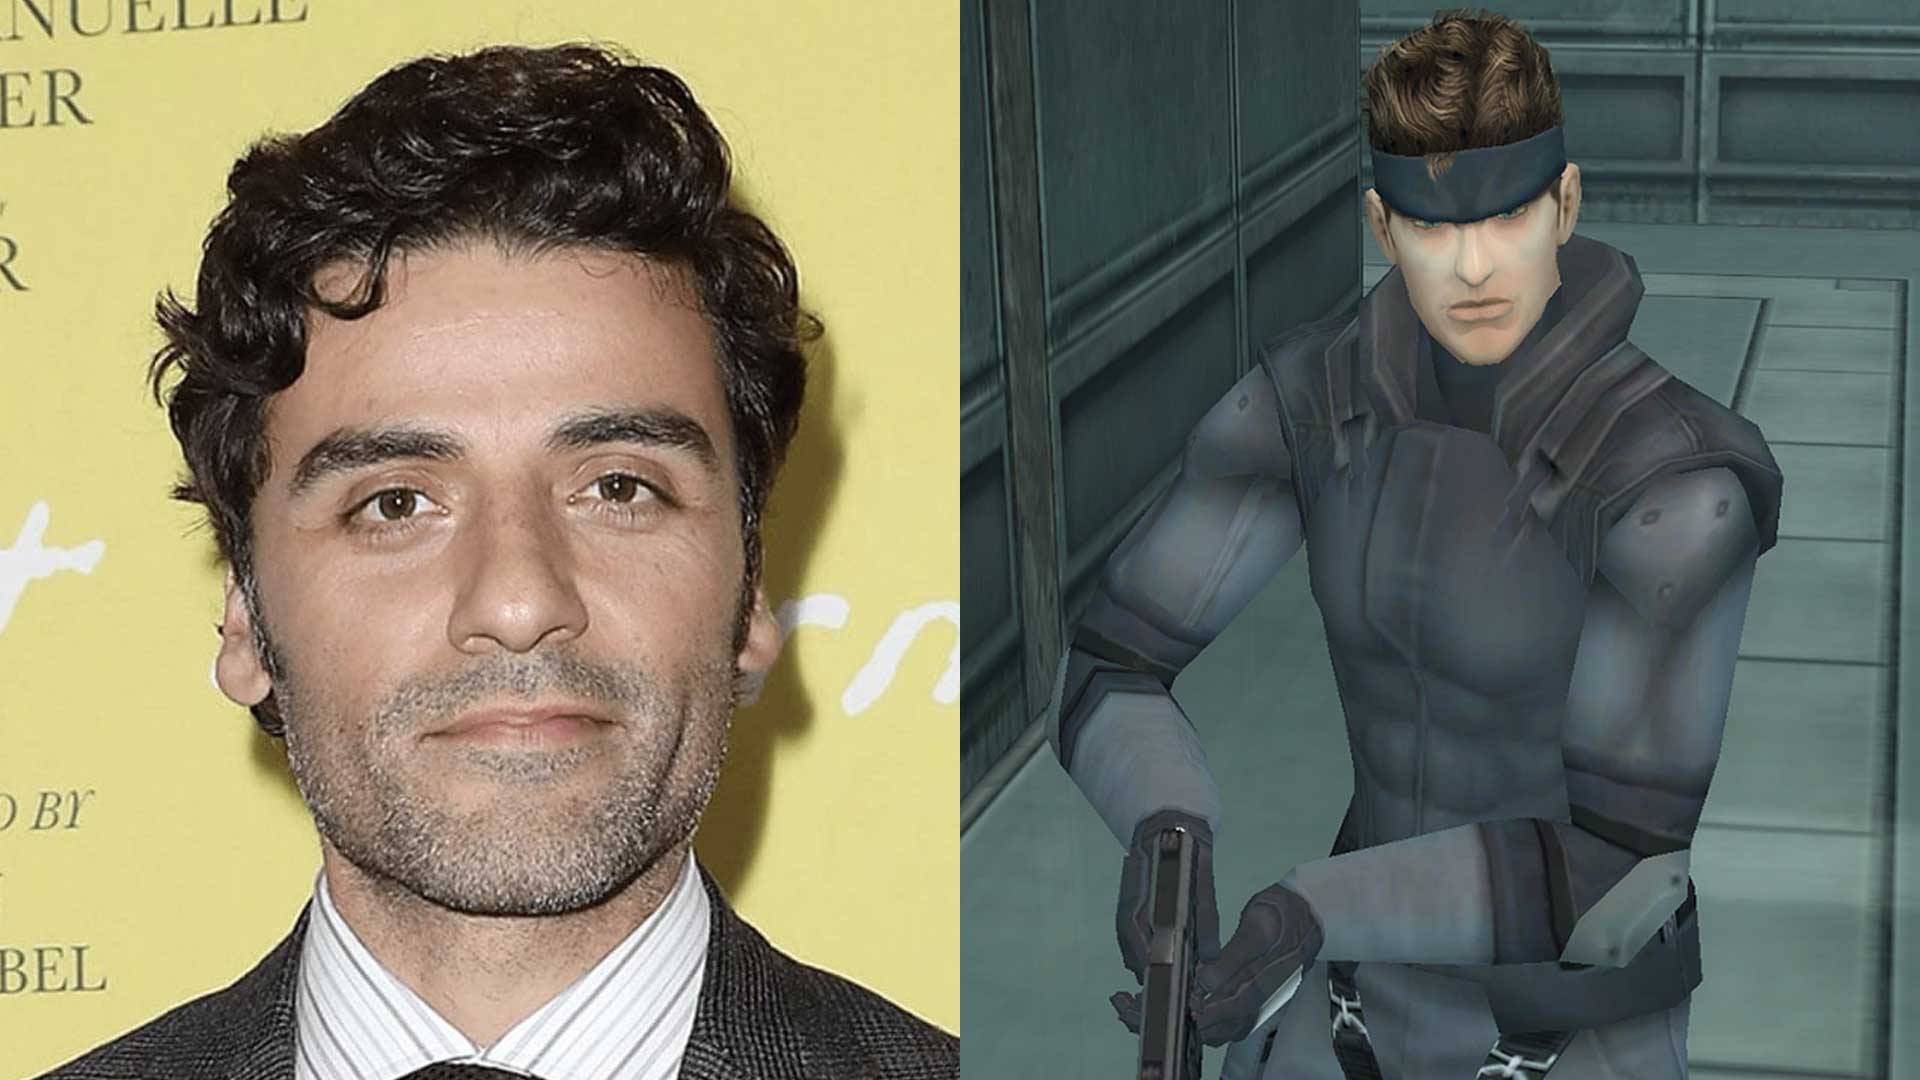 اسکار آیزاک نقش سالید اسنیک را در فیلم Metal Gear Solid ایفا خواهد کرد